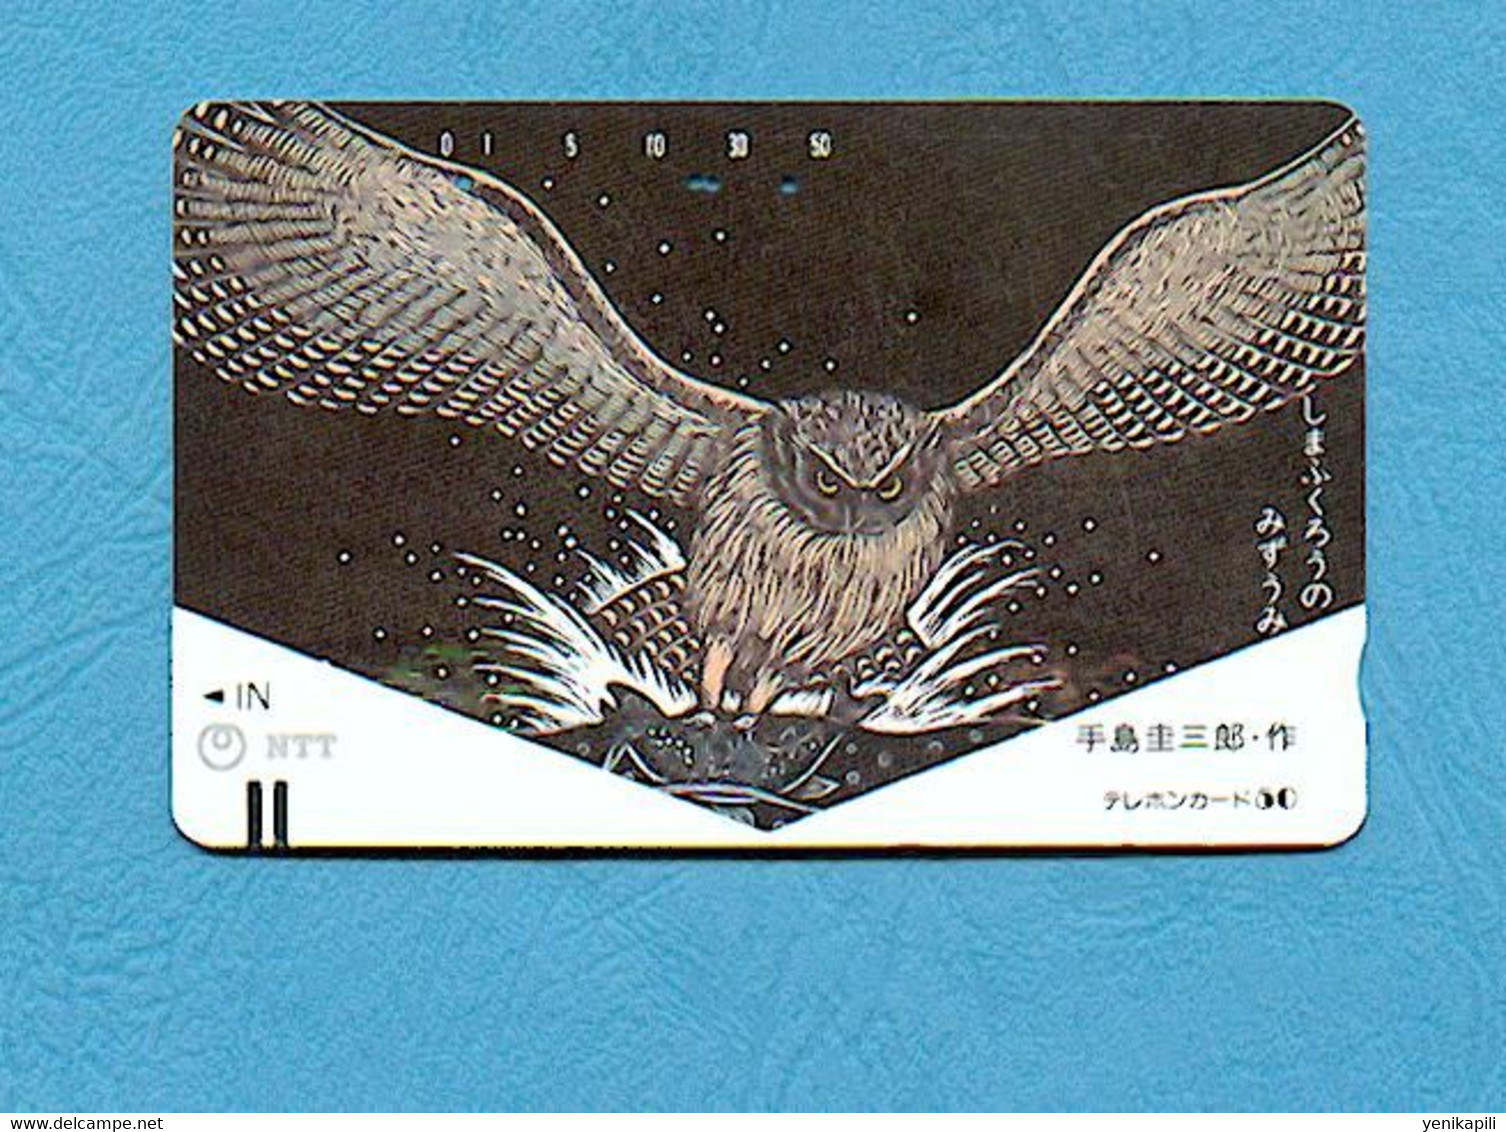 ( 5637 ) - Télécarte JAPON Ancienne - ( Oiseau HIBOU & CHOUETTE ) - *** EC *** - Voir Scan - Búhos, Lechuza